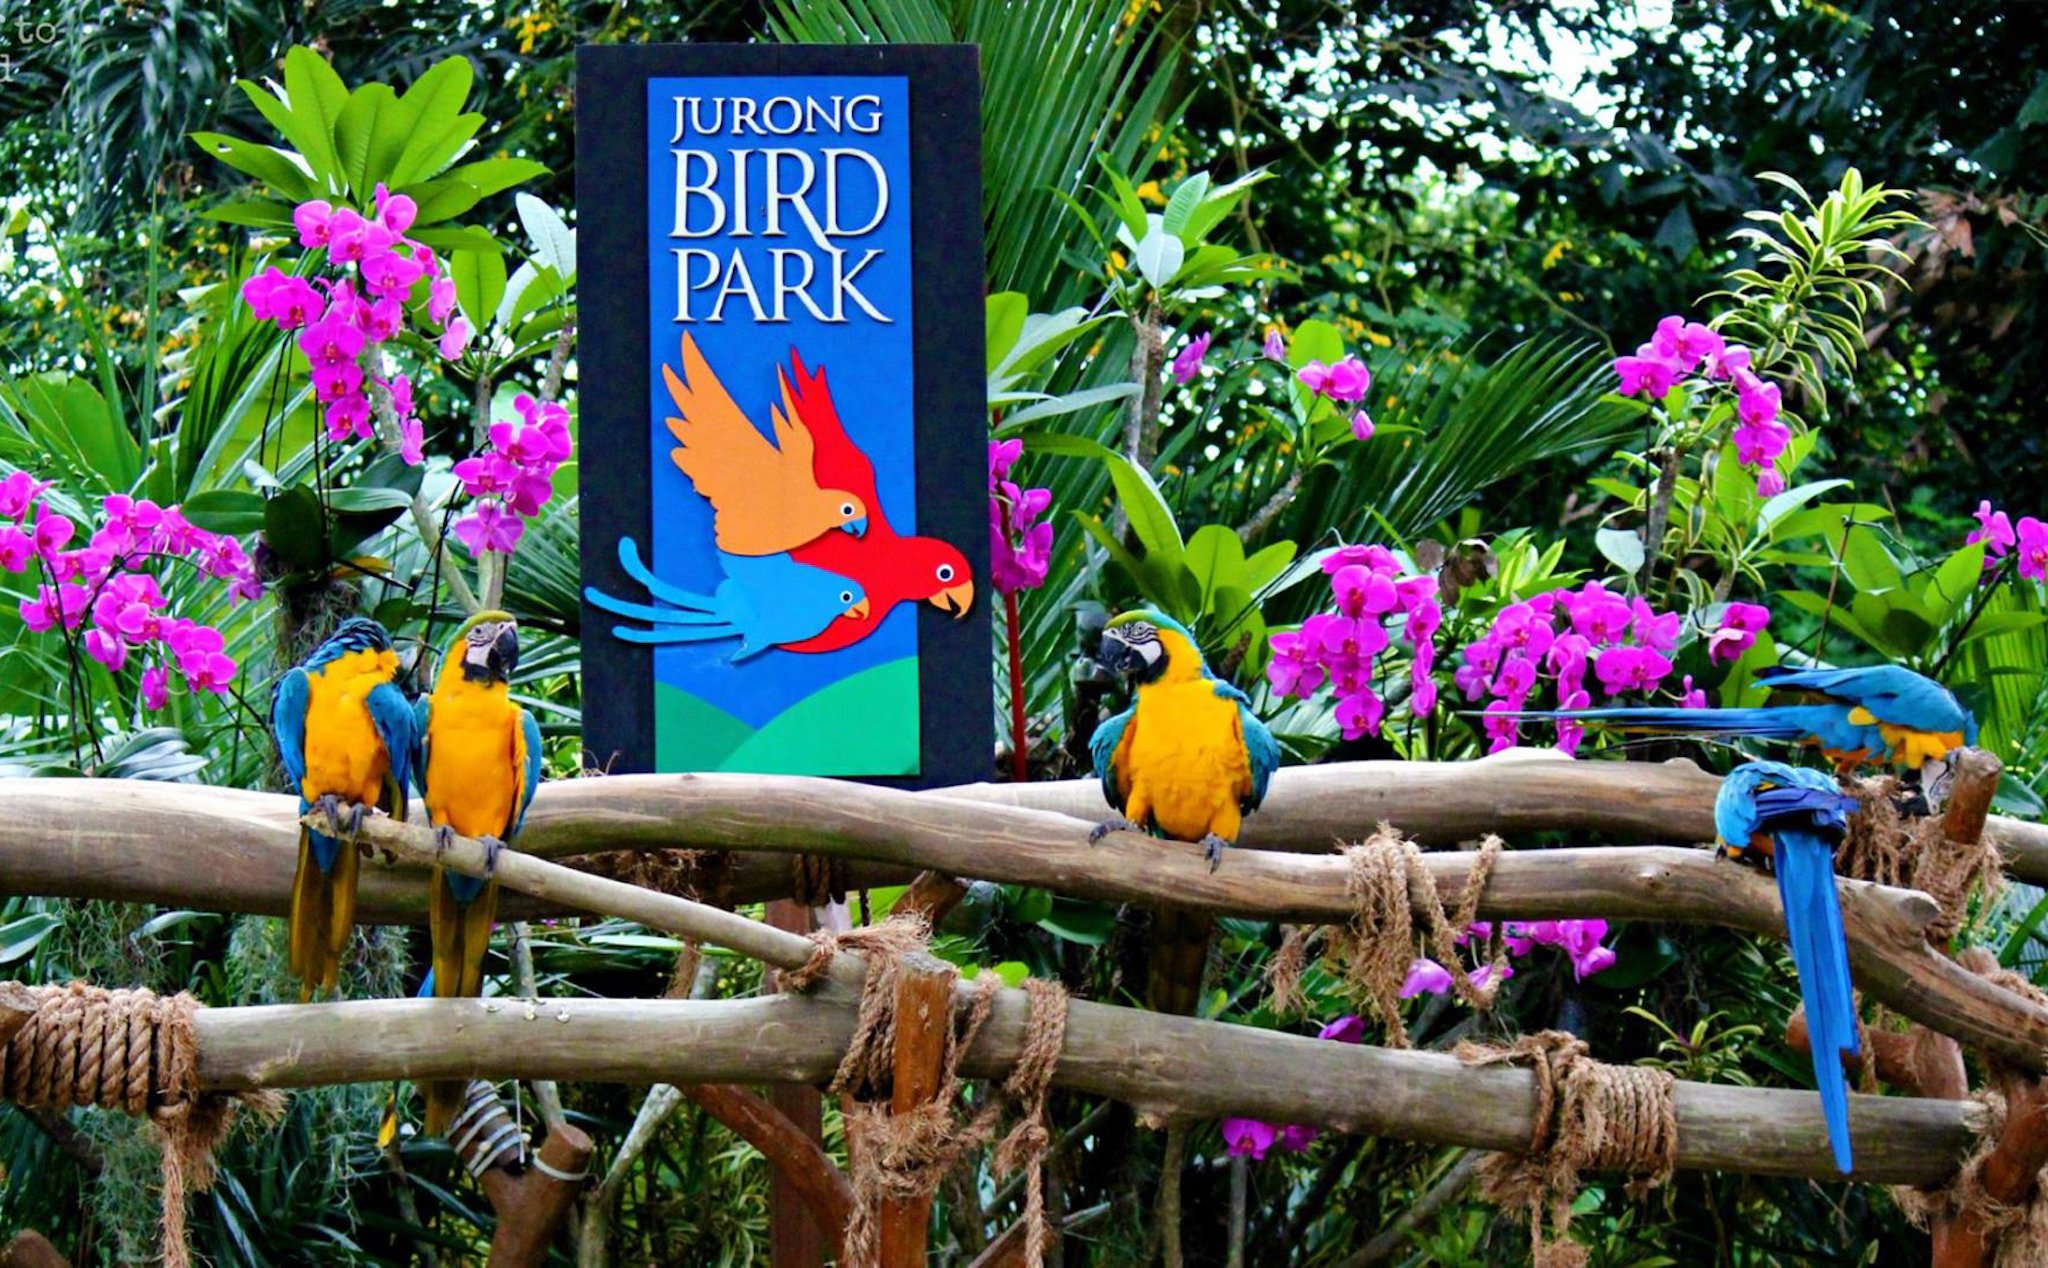 Sau 52 năm hoạt động, vườn chim lớn nhất châu Á - Jurong ở Singapore sắp đóng cửa